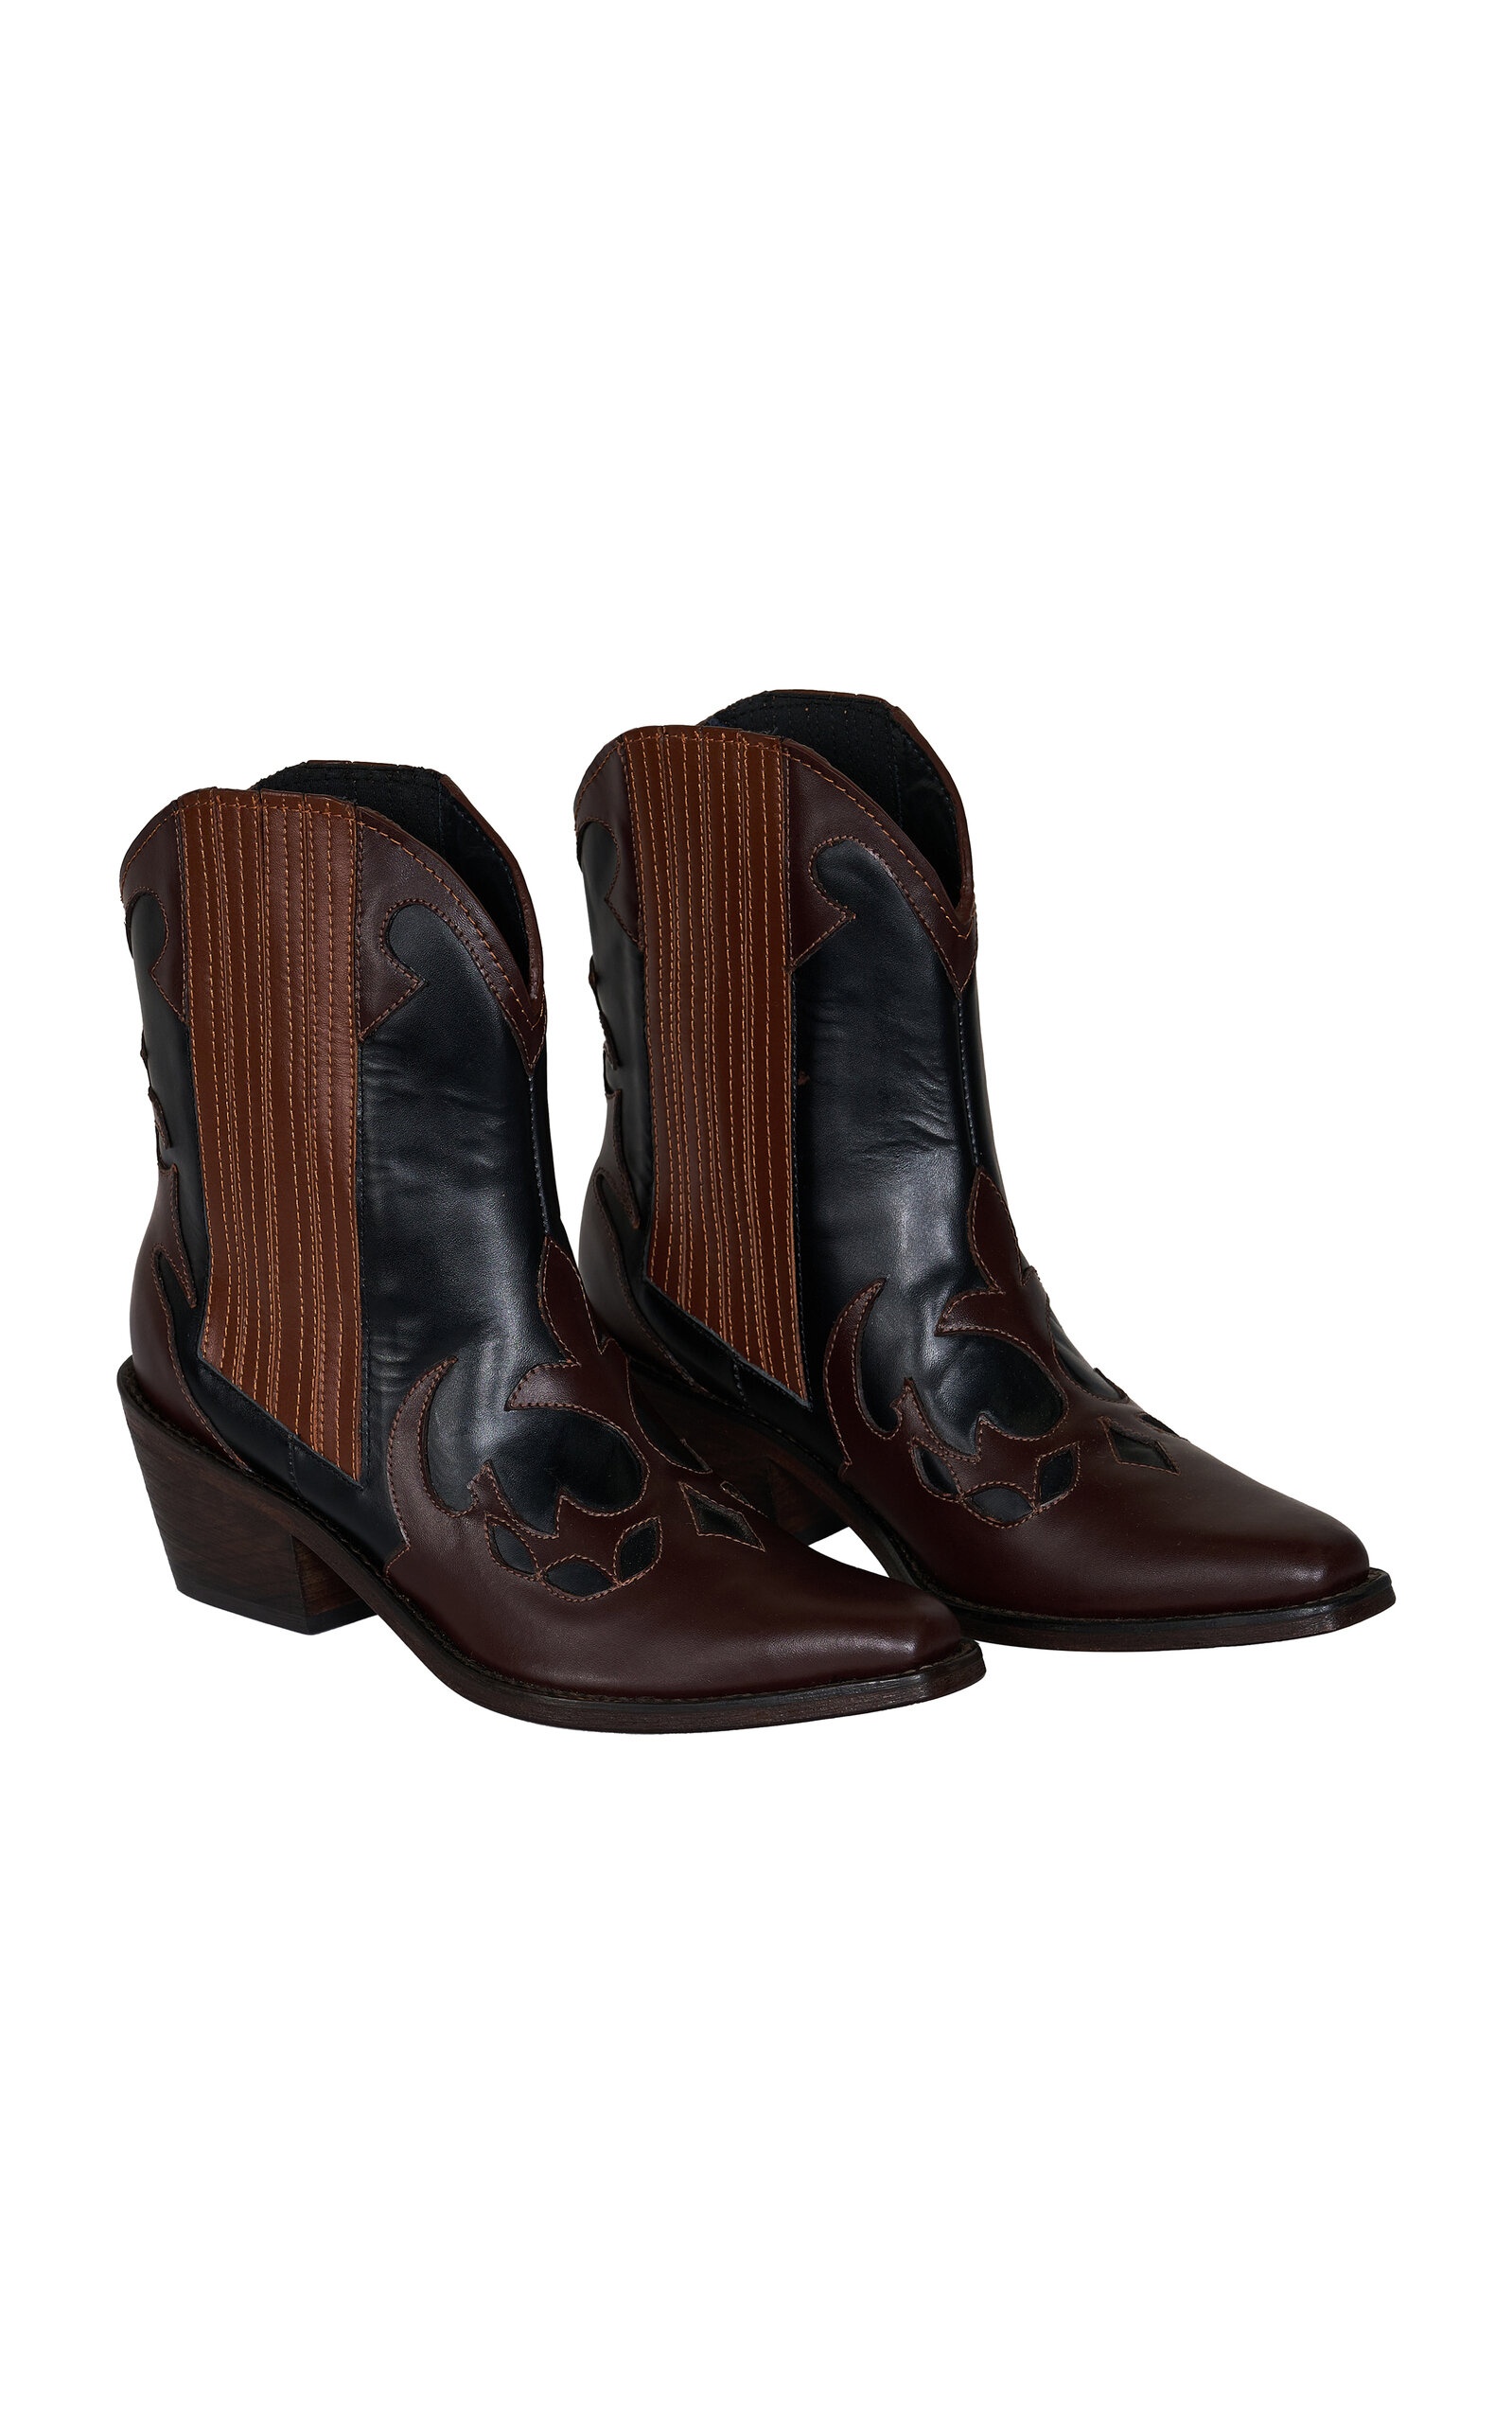 Mule Deer Leather Western Boots black - 3